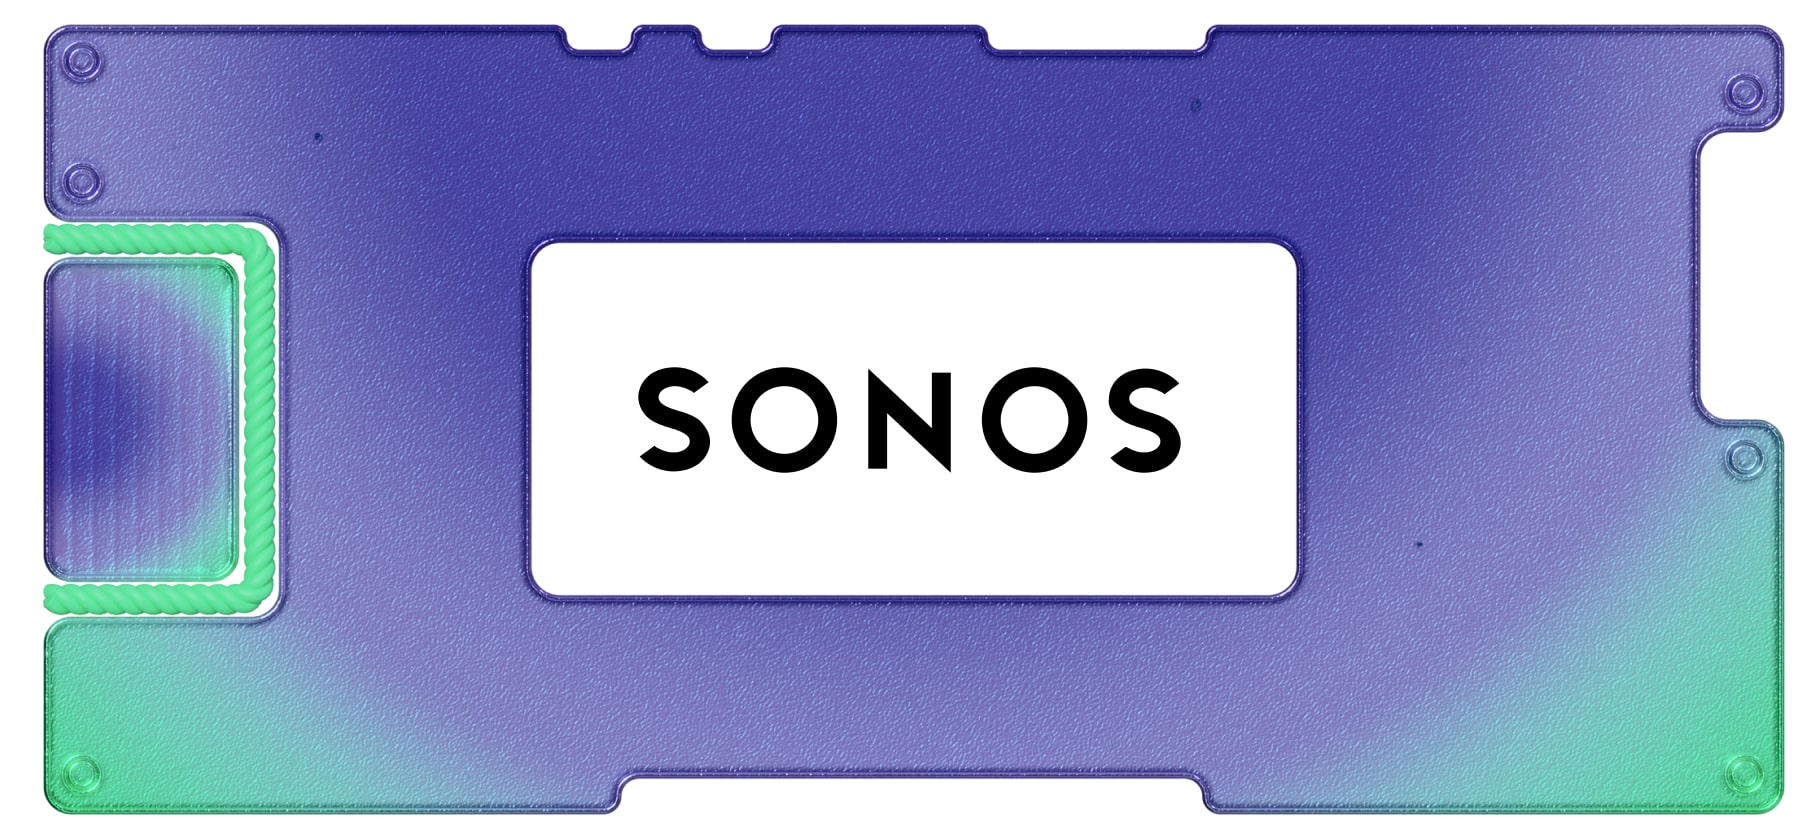 Инвестидея: Sonos, потому что нужны колонки